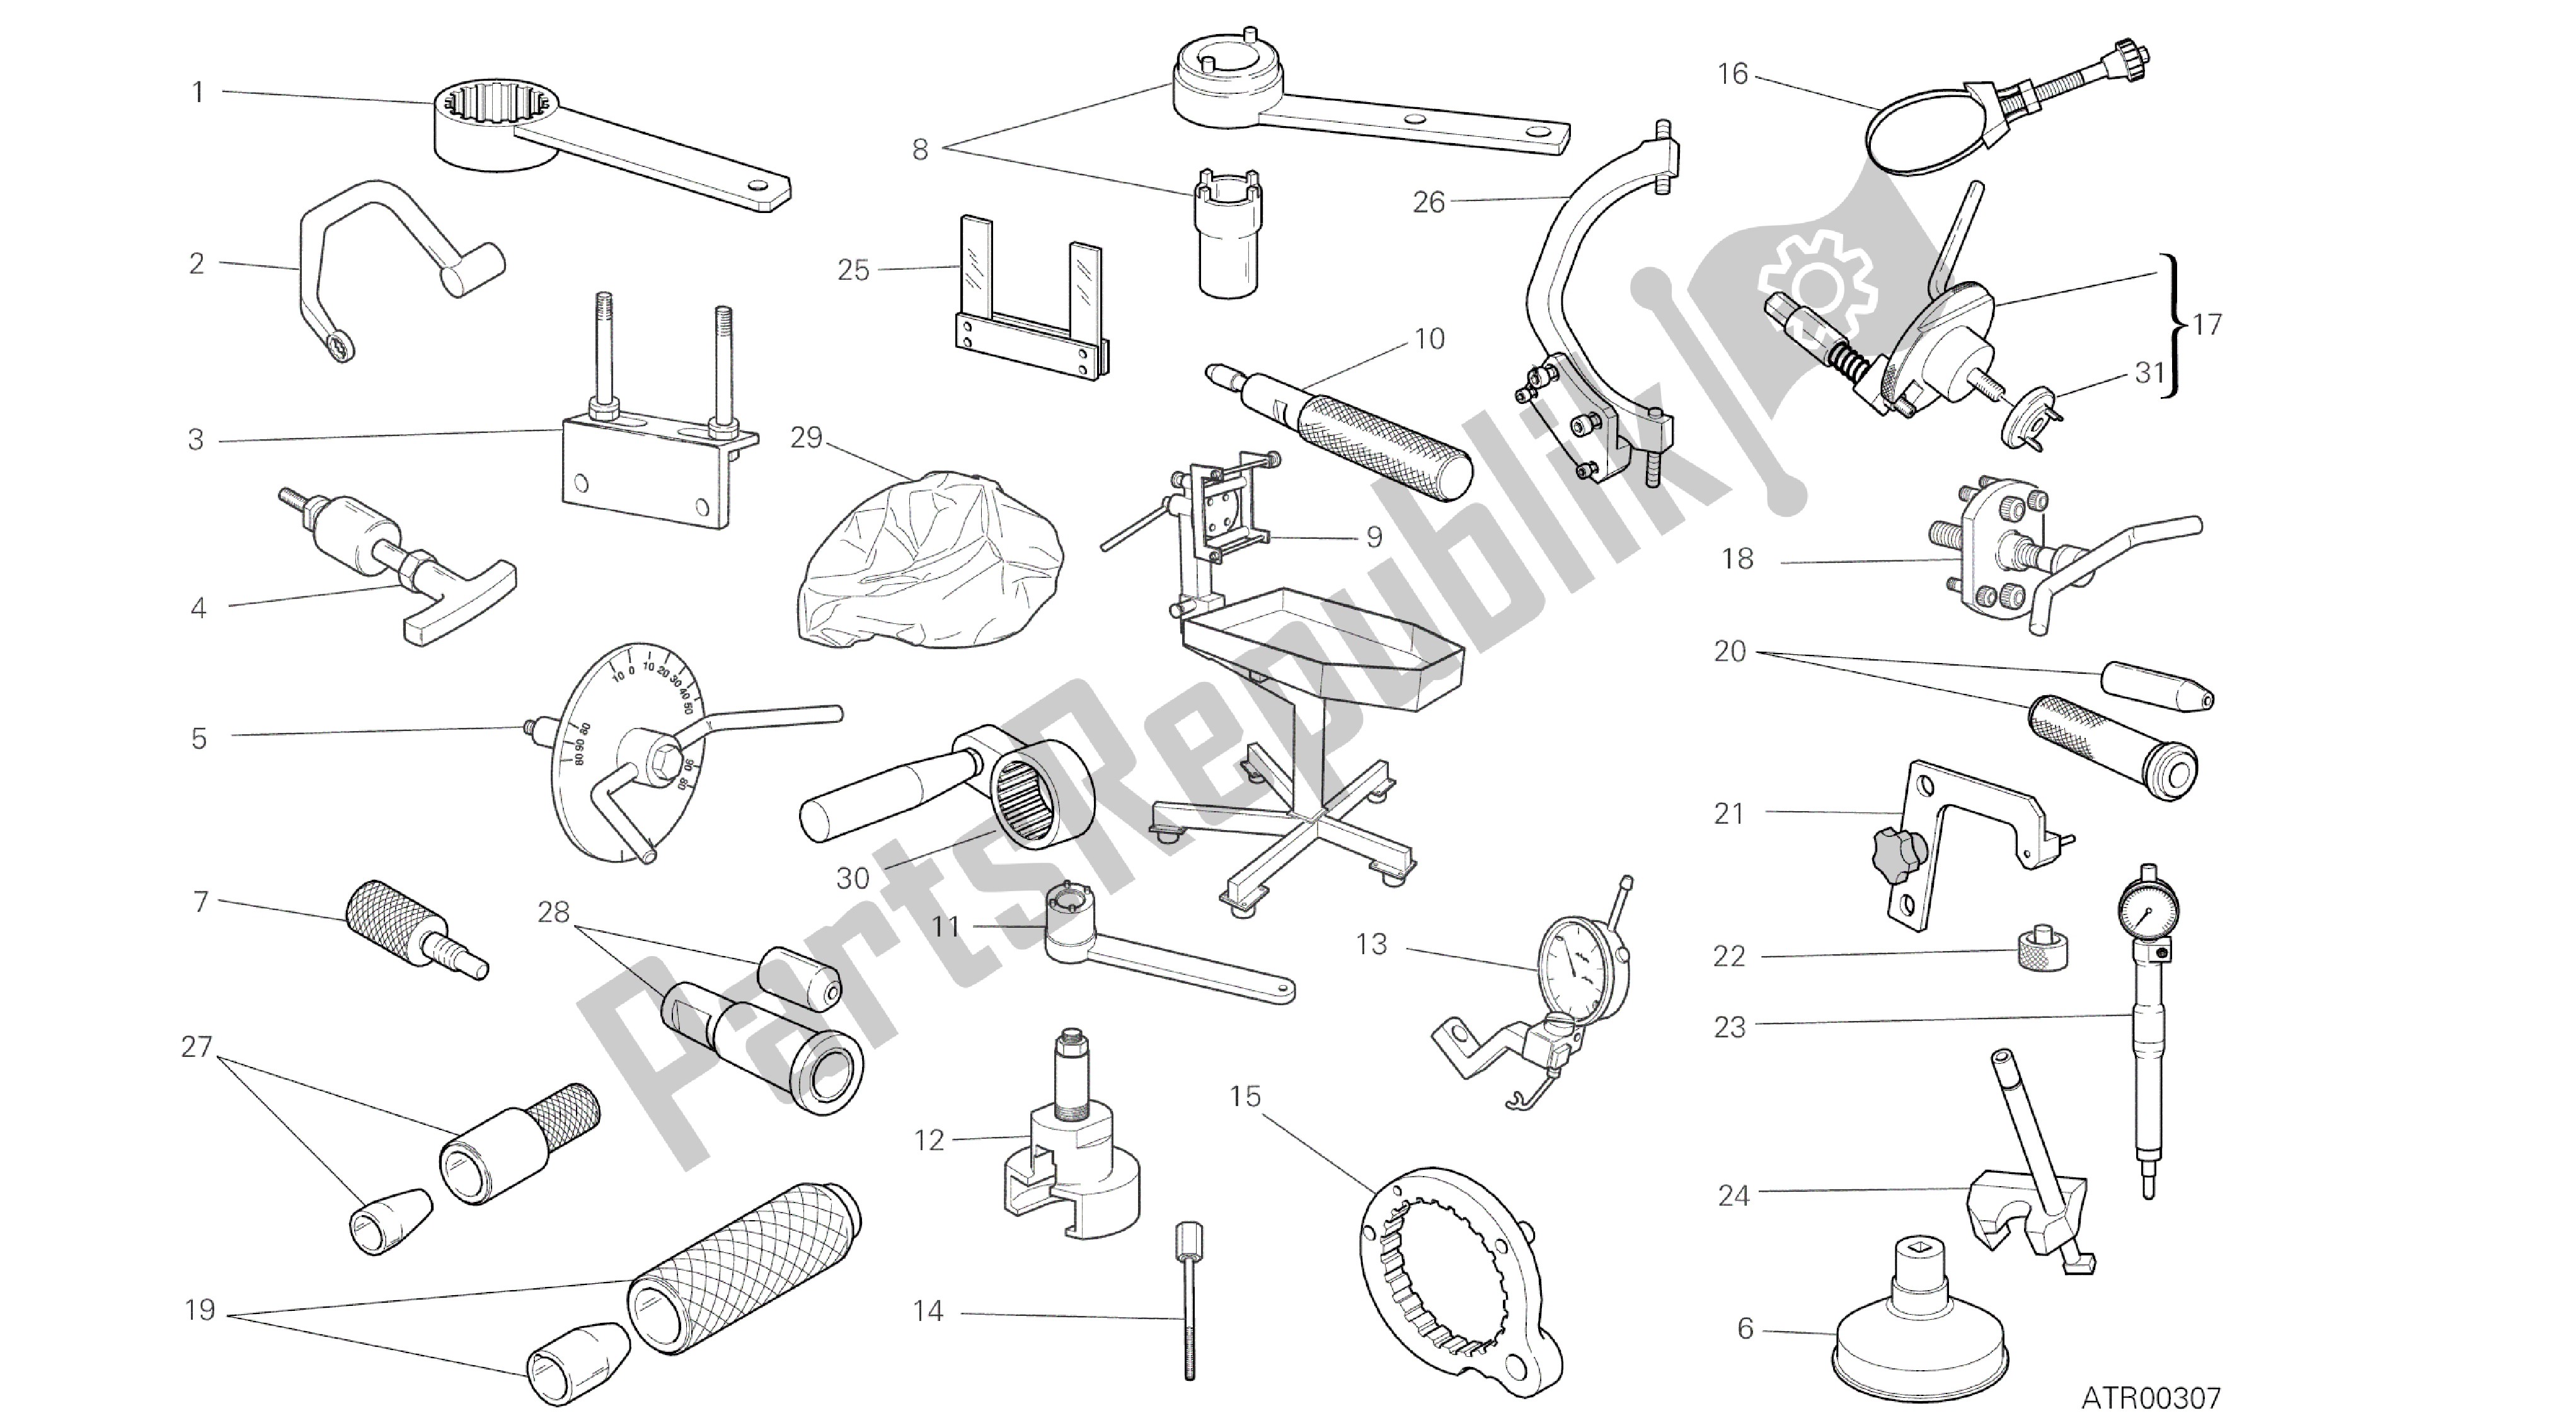 Alle onderdelen voor de Tekening 001 - Werkplaatsgereedschap, Motor [mod: M796abs; Xst: Aus, Bra, Eur, Jap, Twn] Groepstools van de Ducati Monster ABS 796 2014